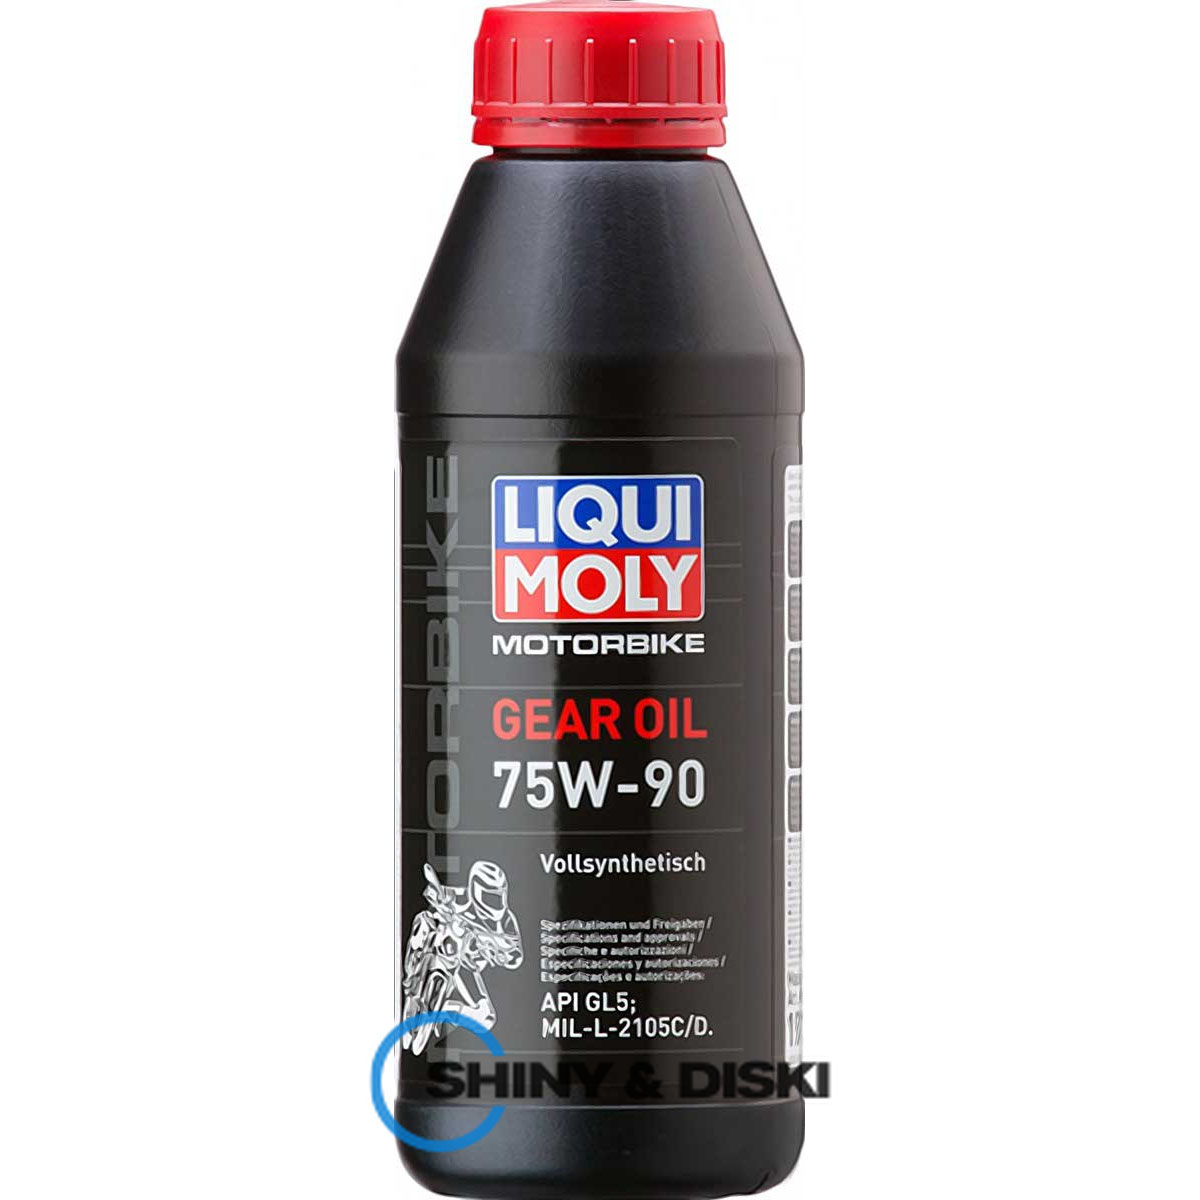 liqui moly motorbike gear oil 75w-90 (0.5л)